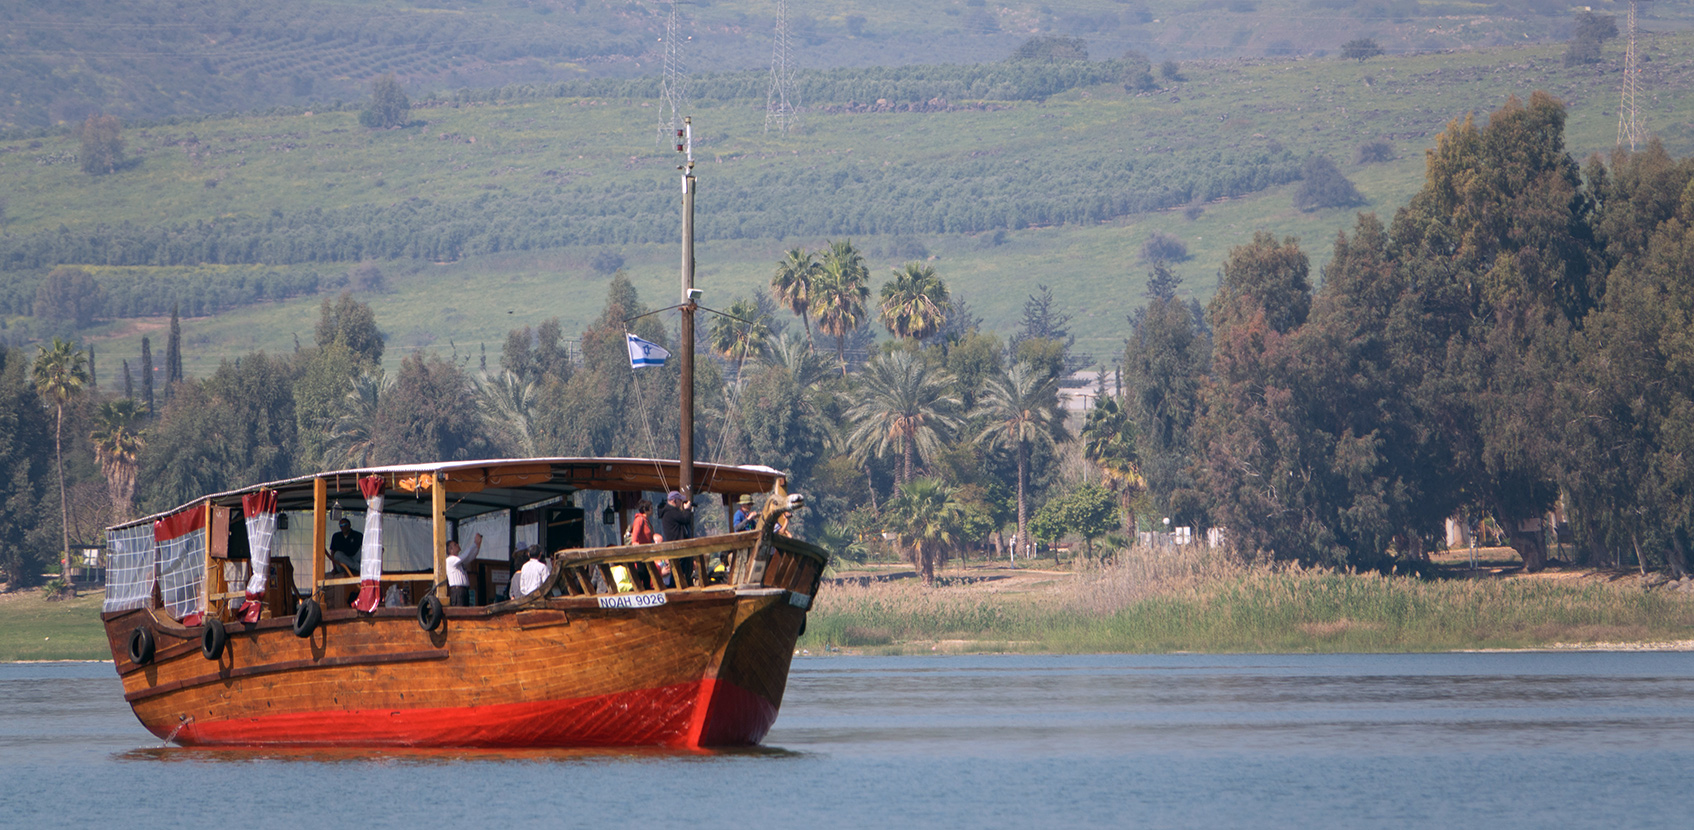 Eine Bootsfahrt auf dem See Genezareth gehört vor allem für christliche Pilger zu den wichtigsten touristischen Attraktionen in Israel.